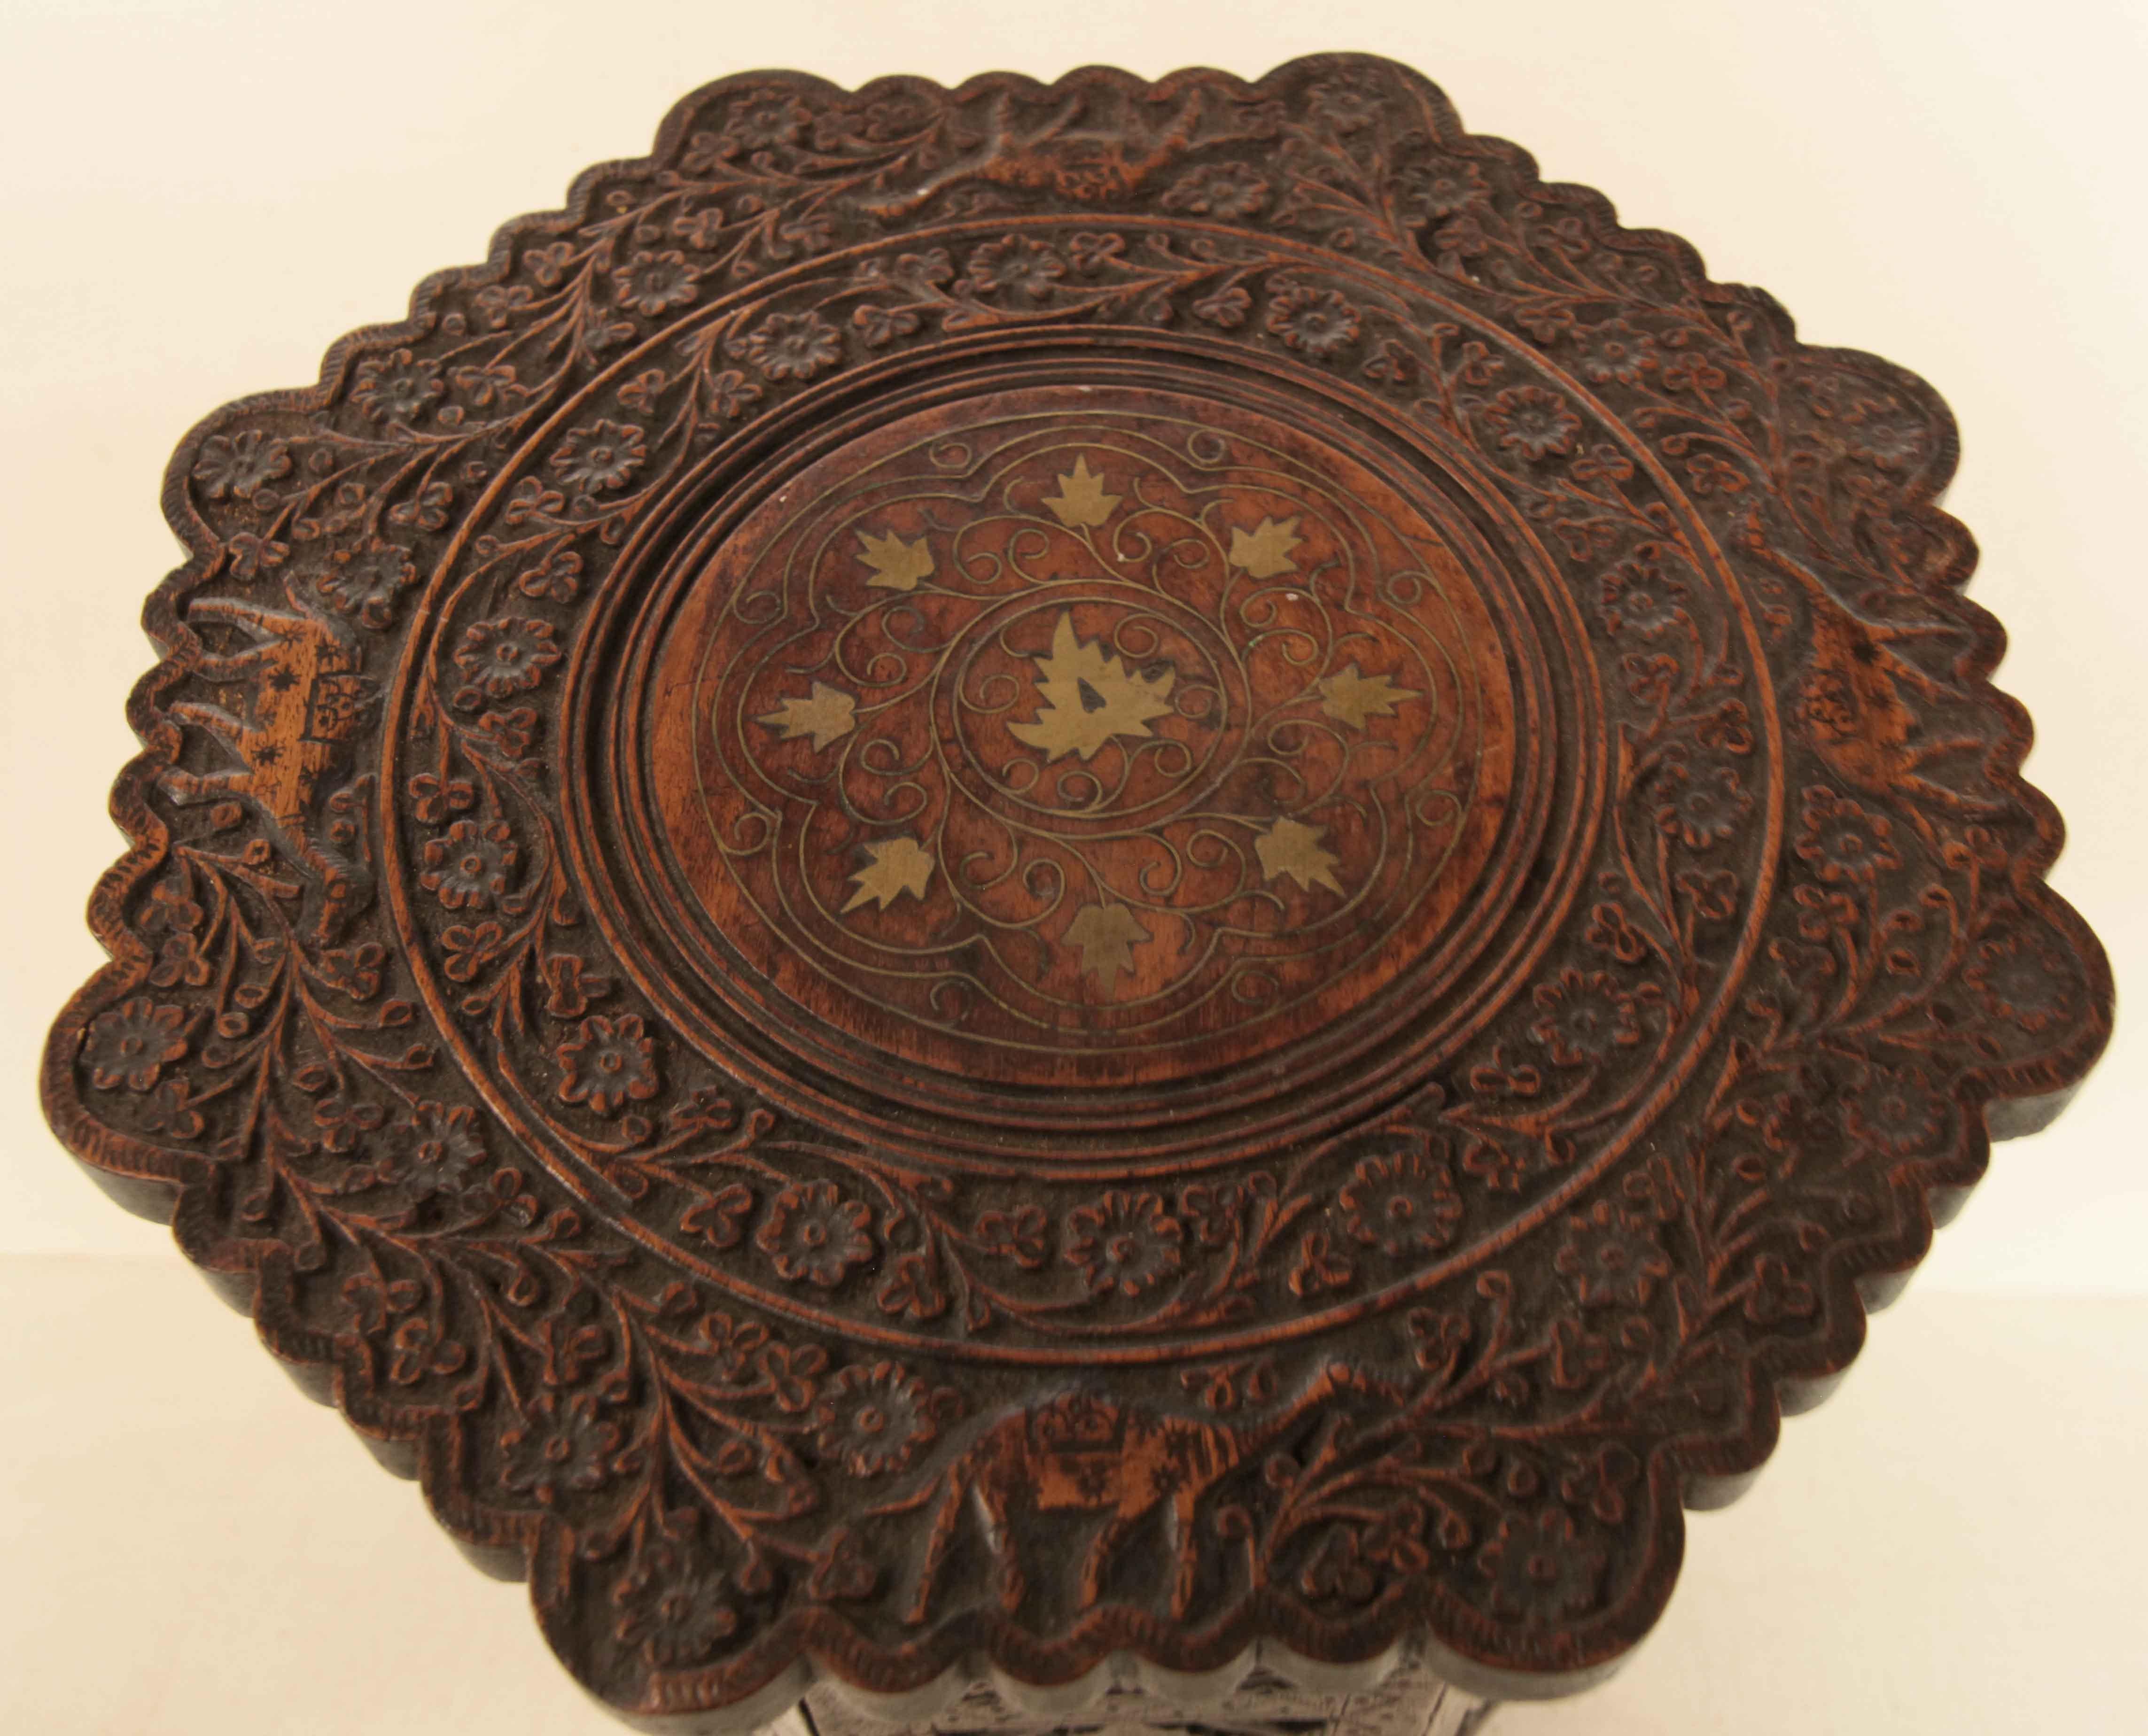 Table d'appoint octogonale en bois sculpté du Maroc, le plateau a un bord festonné avec une bordure de fleurs et de feuillages en volutes avec des chameaux, le centre présente un cercle de fleurs et d'arabesques en laiton incrusté. .  La base